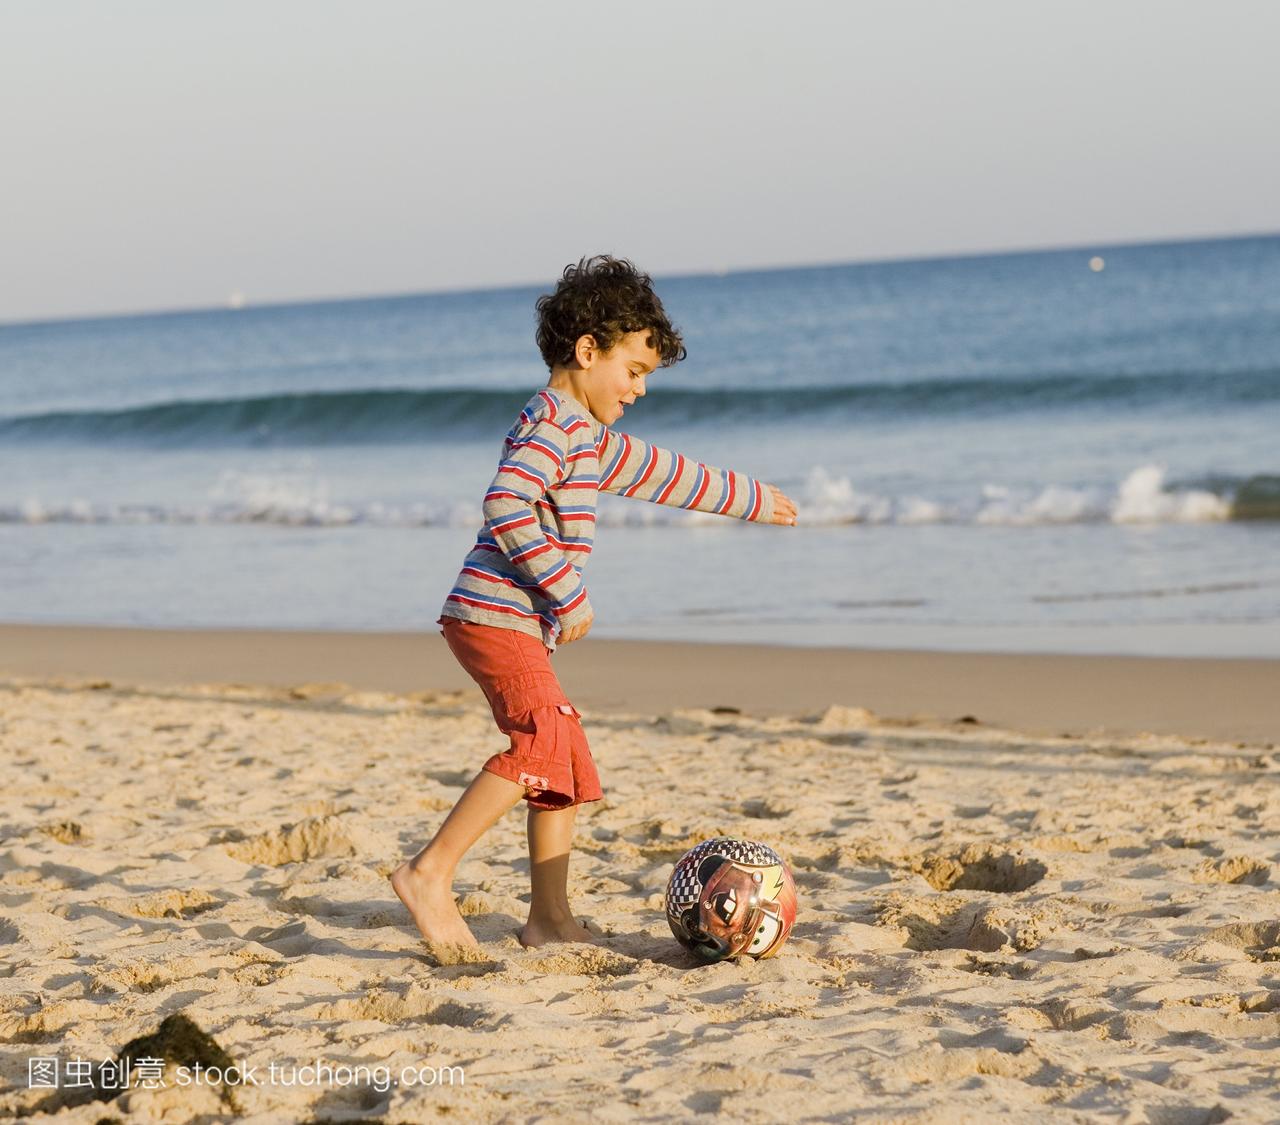 一个男孩在沙滩上玩球,葡萄牙。